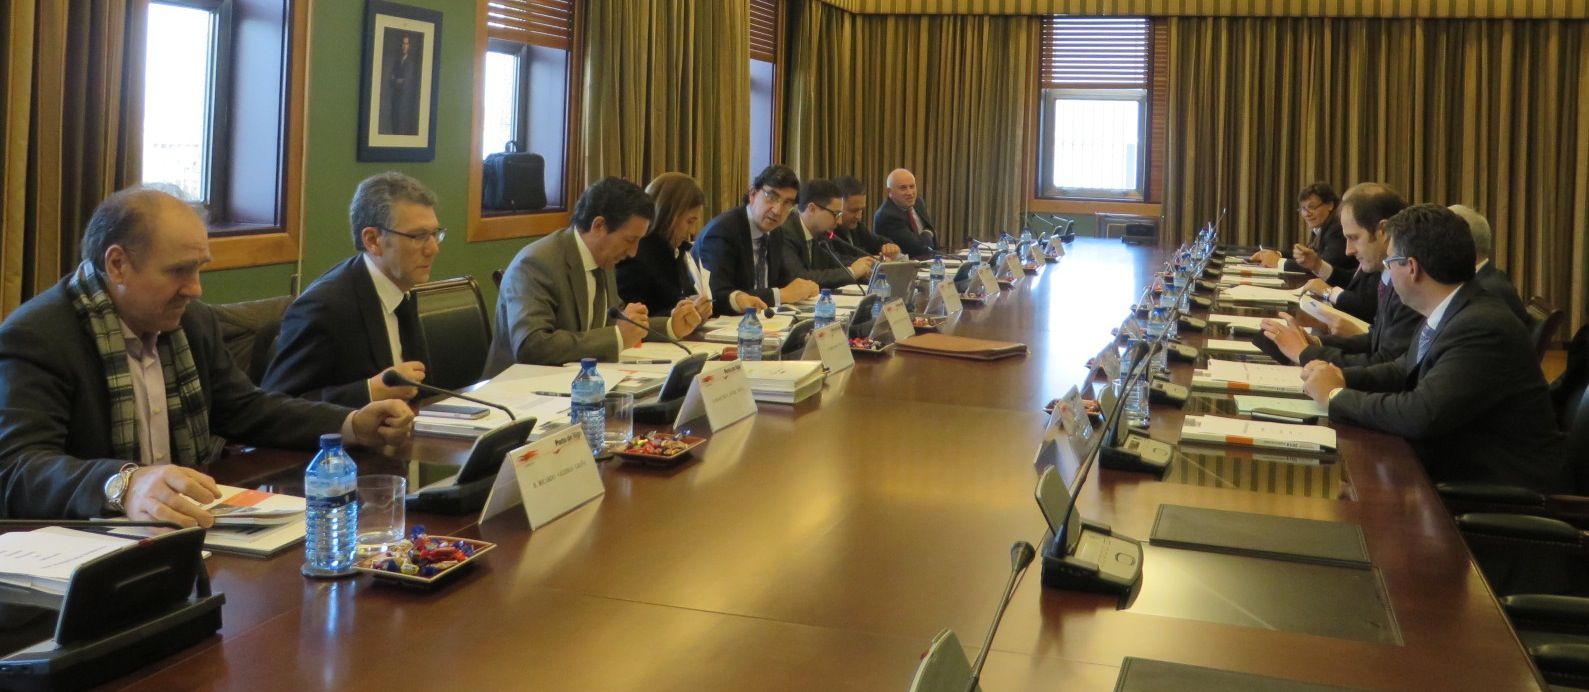 Consejo de administracion del puerto de Vigo 27 de febrero 2015